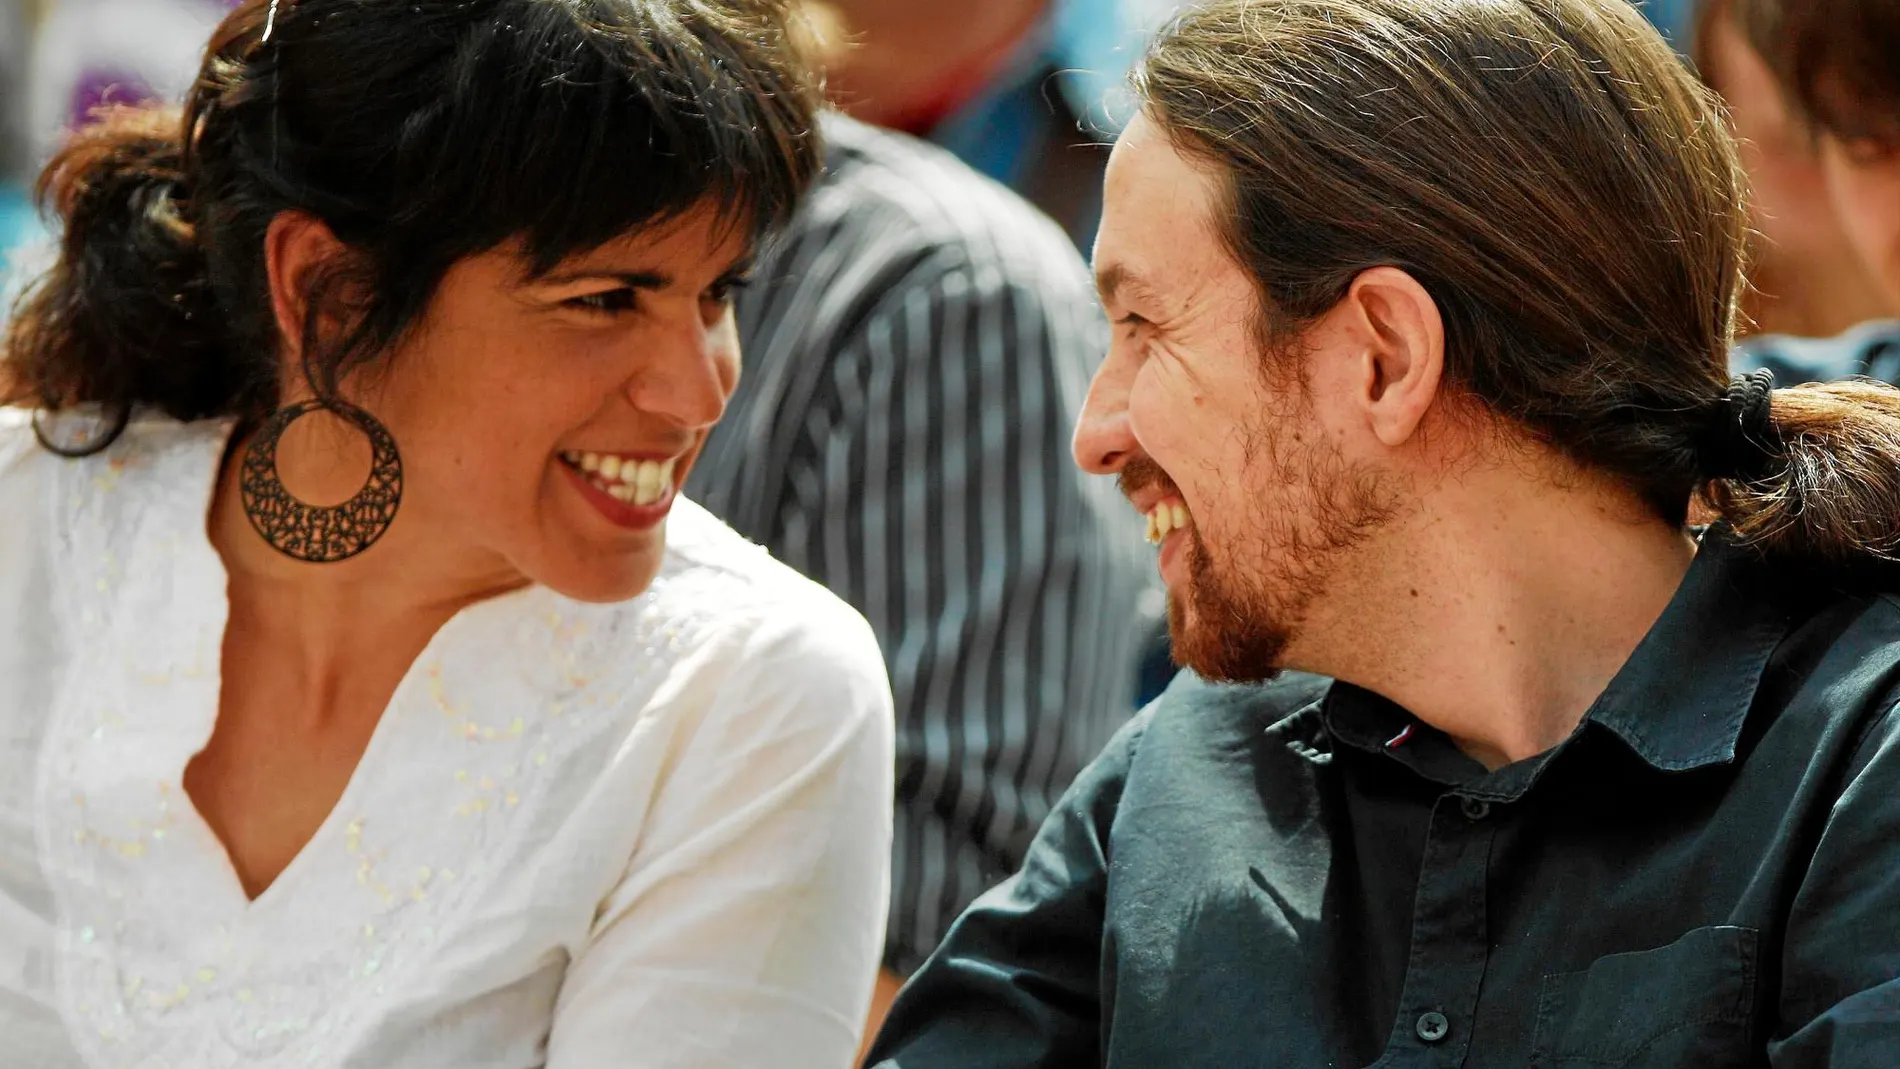 La líder de Podemos en Andalucía, Teresa Rodríguez, junto al máximo dirigente nacional del partido morado, Pablo Iglesias / Efe